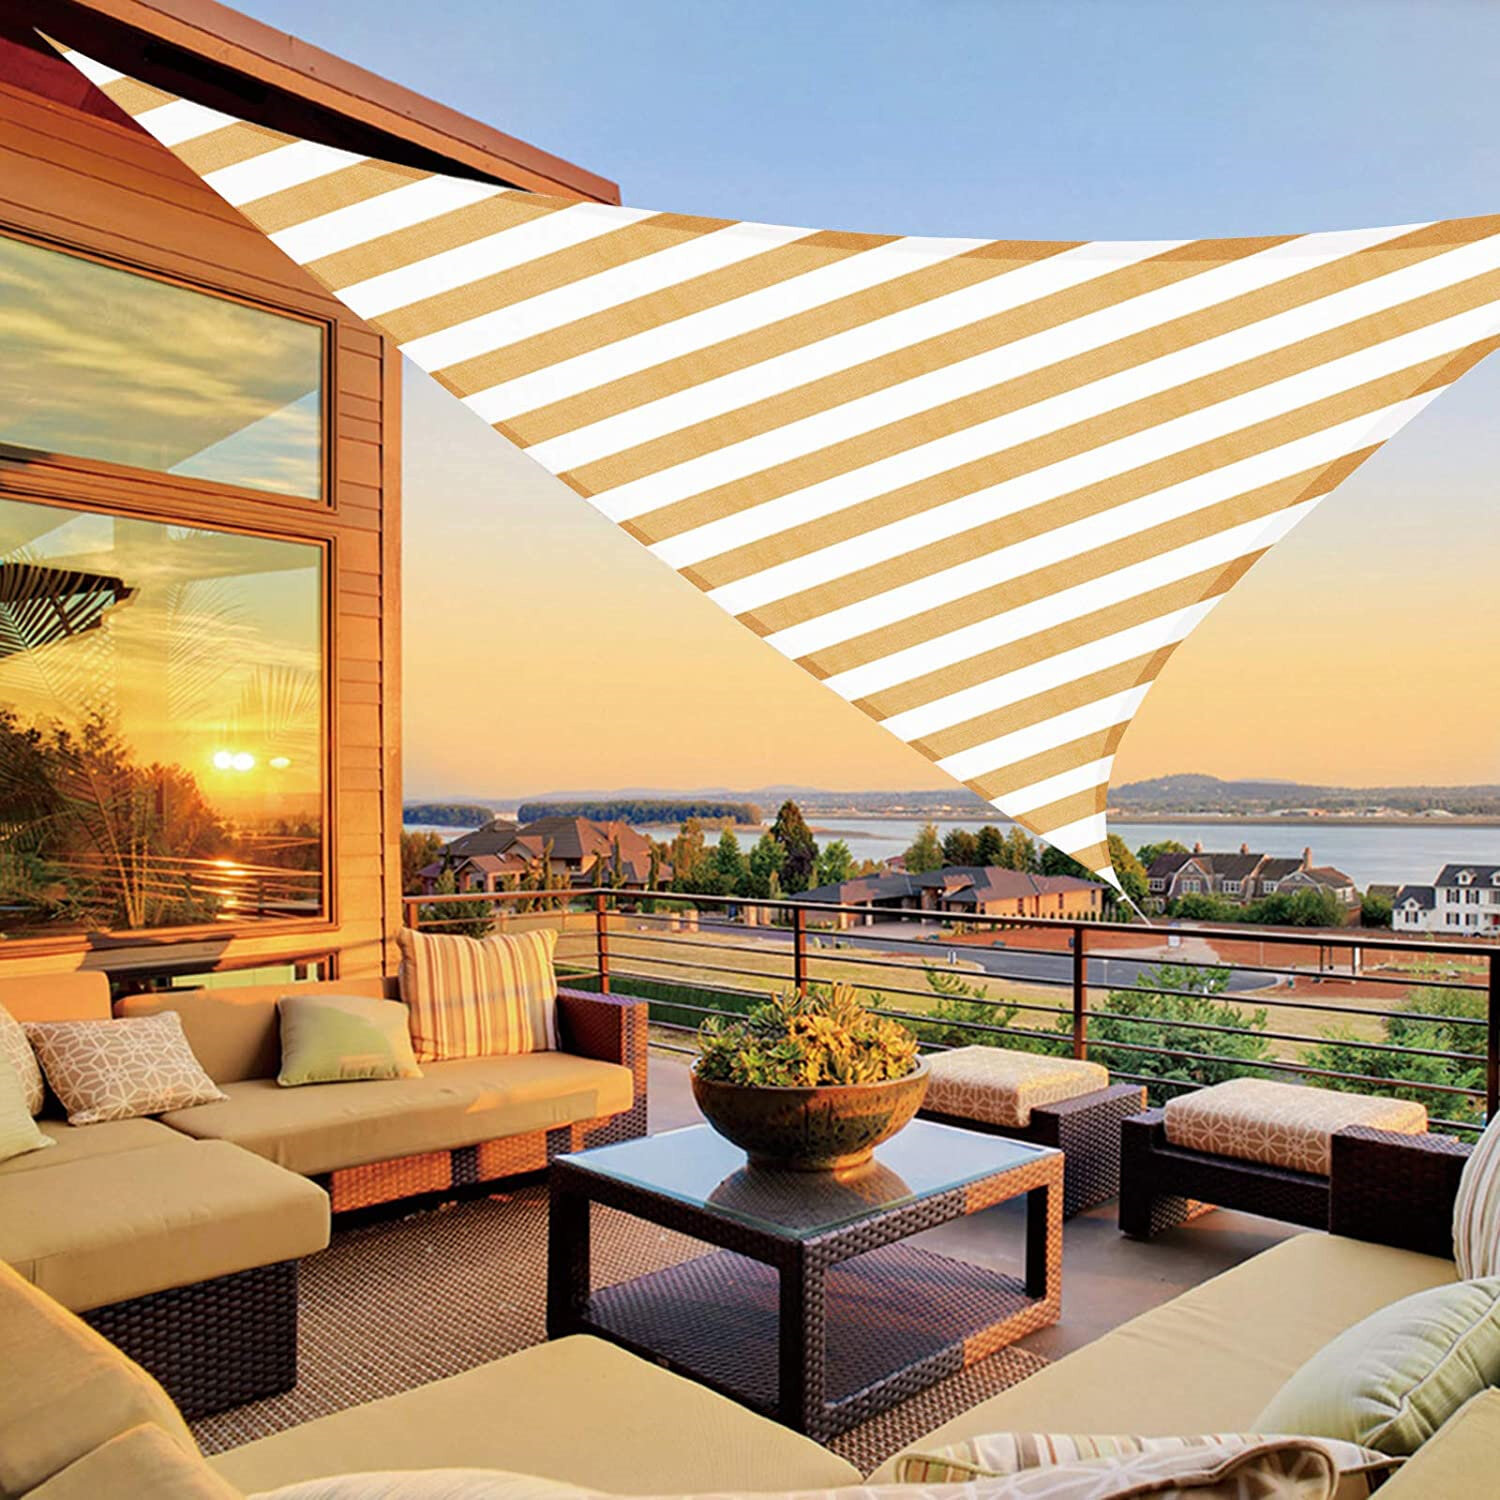 Sun Shade Sail Canopy Triangle Sand UV Block Sunshade For Backyard Deck Outdoor 